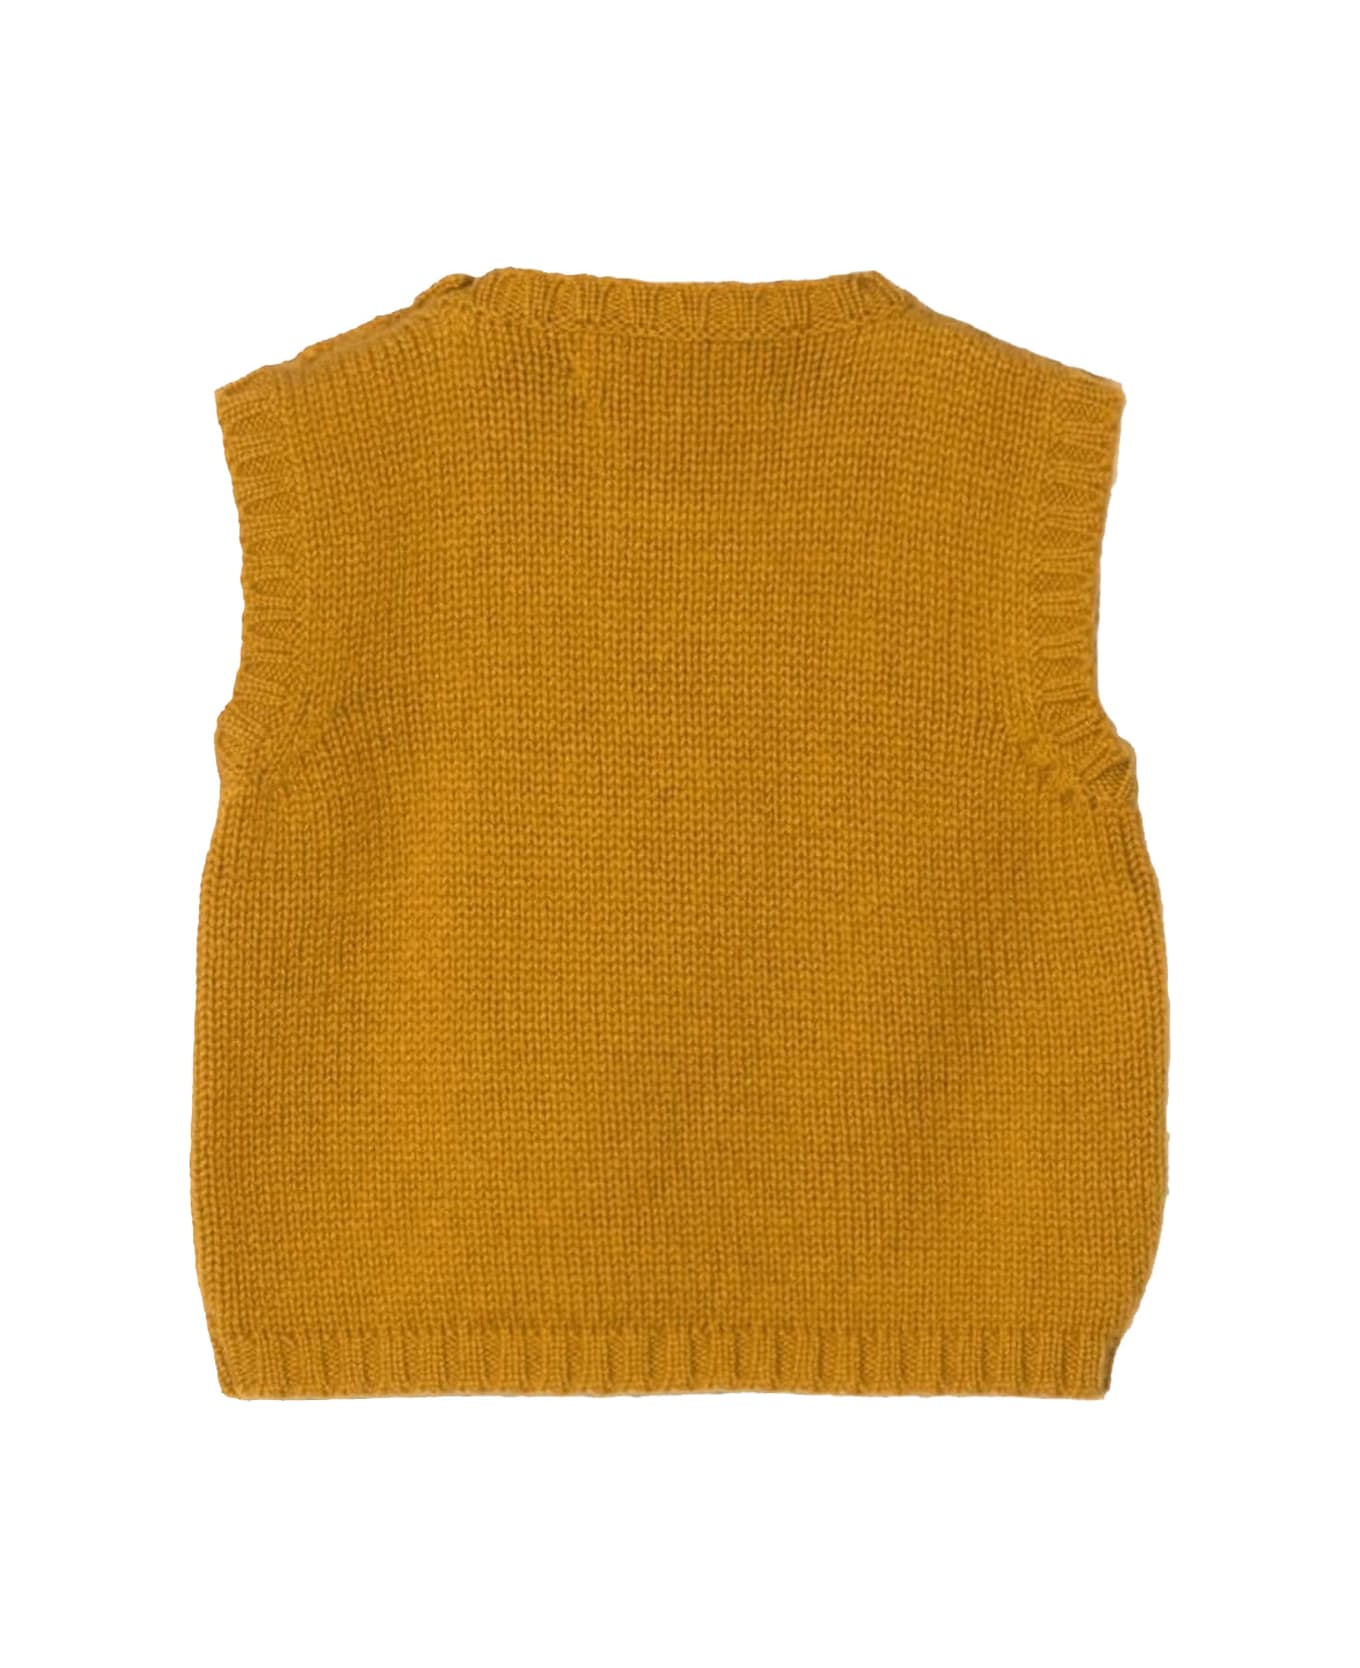 La stupenderia Cashmere Vest - Yellow